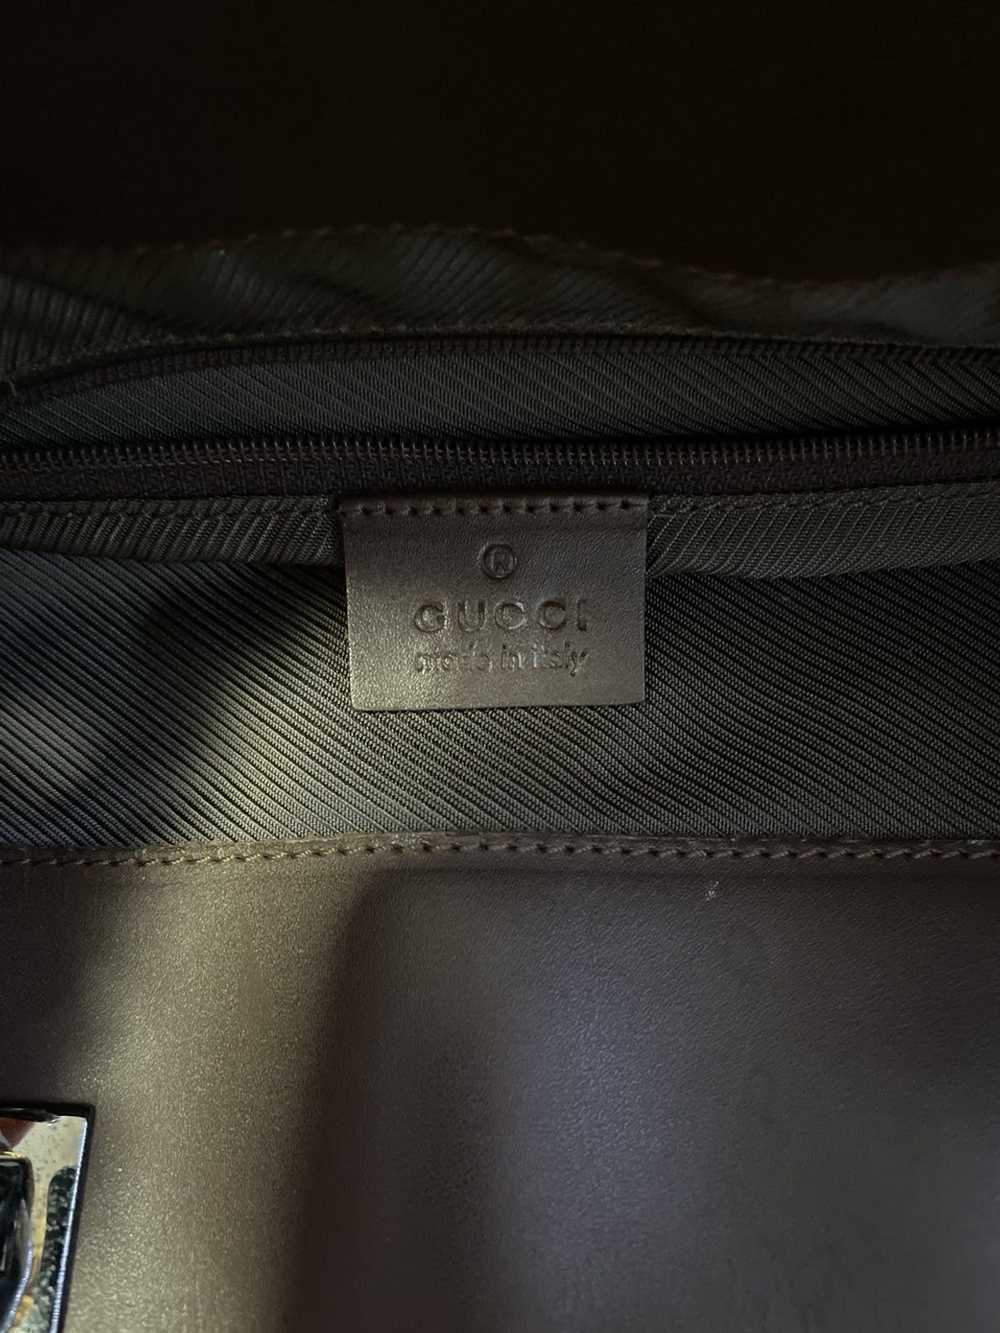 Gucci Gucci gg canvas monogram tote bag - image 5